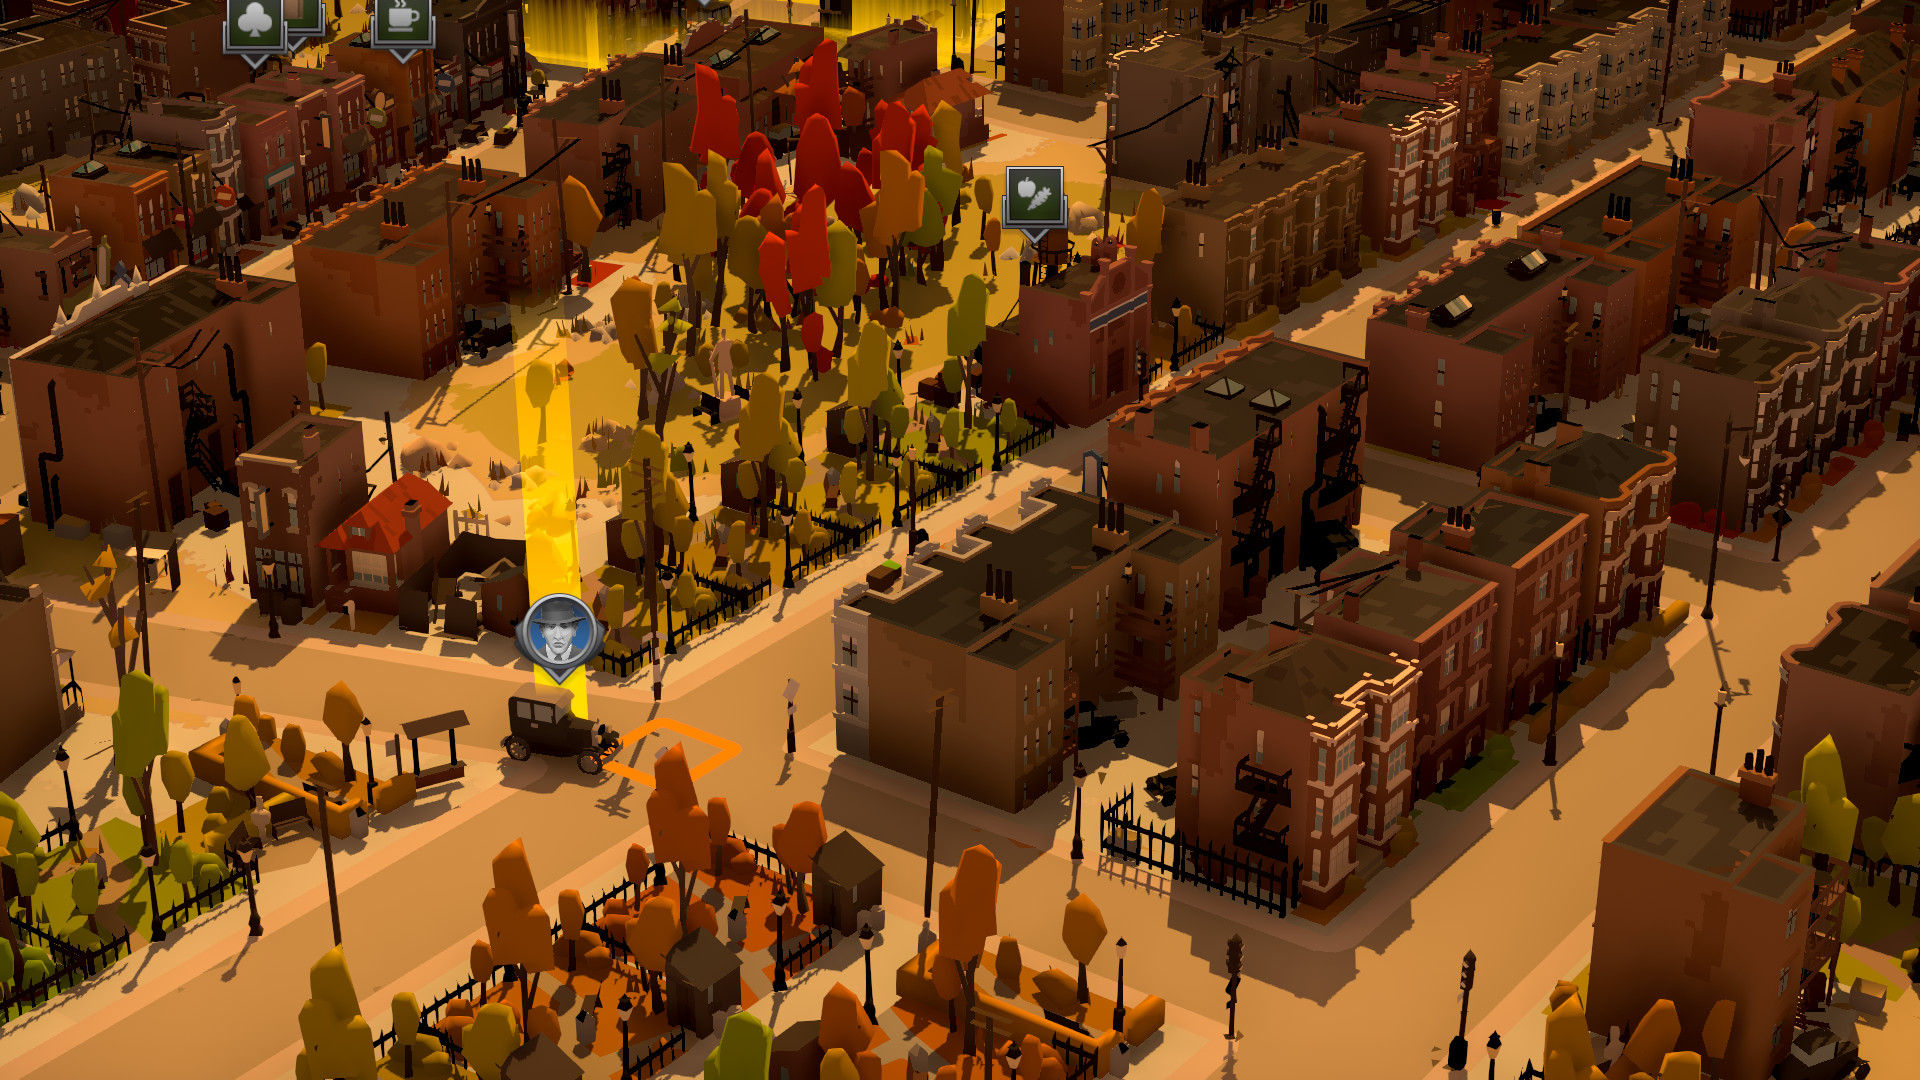 禁酒令期间的贩酒模拟游戏《黑帮之城》正式公布